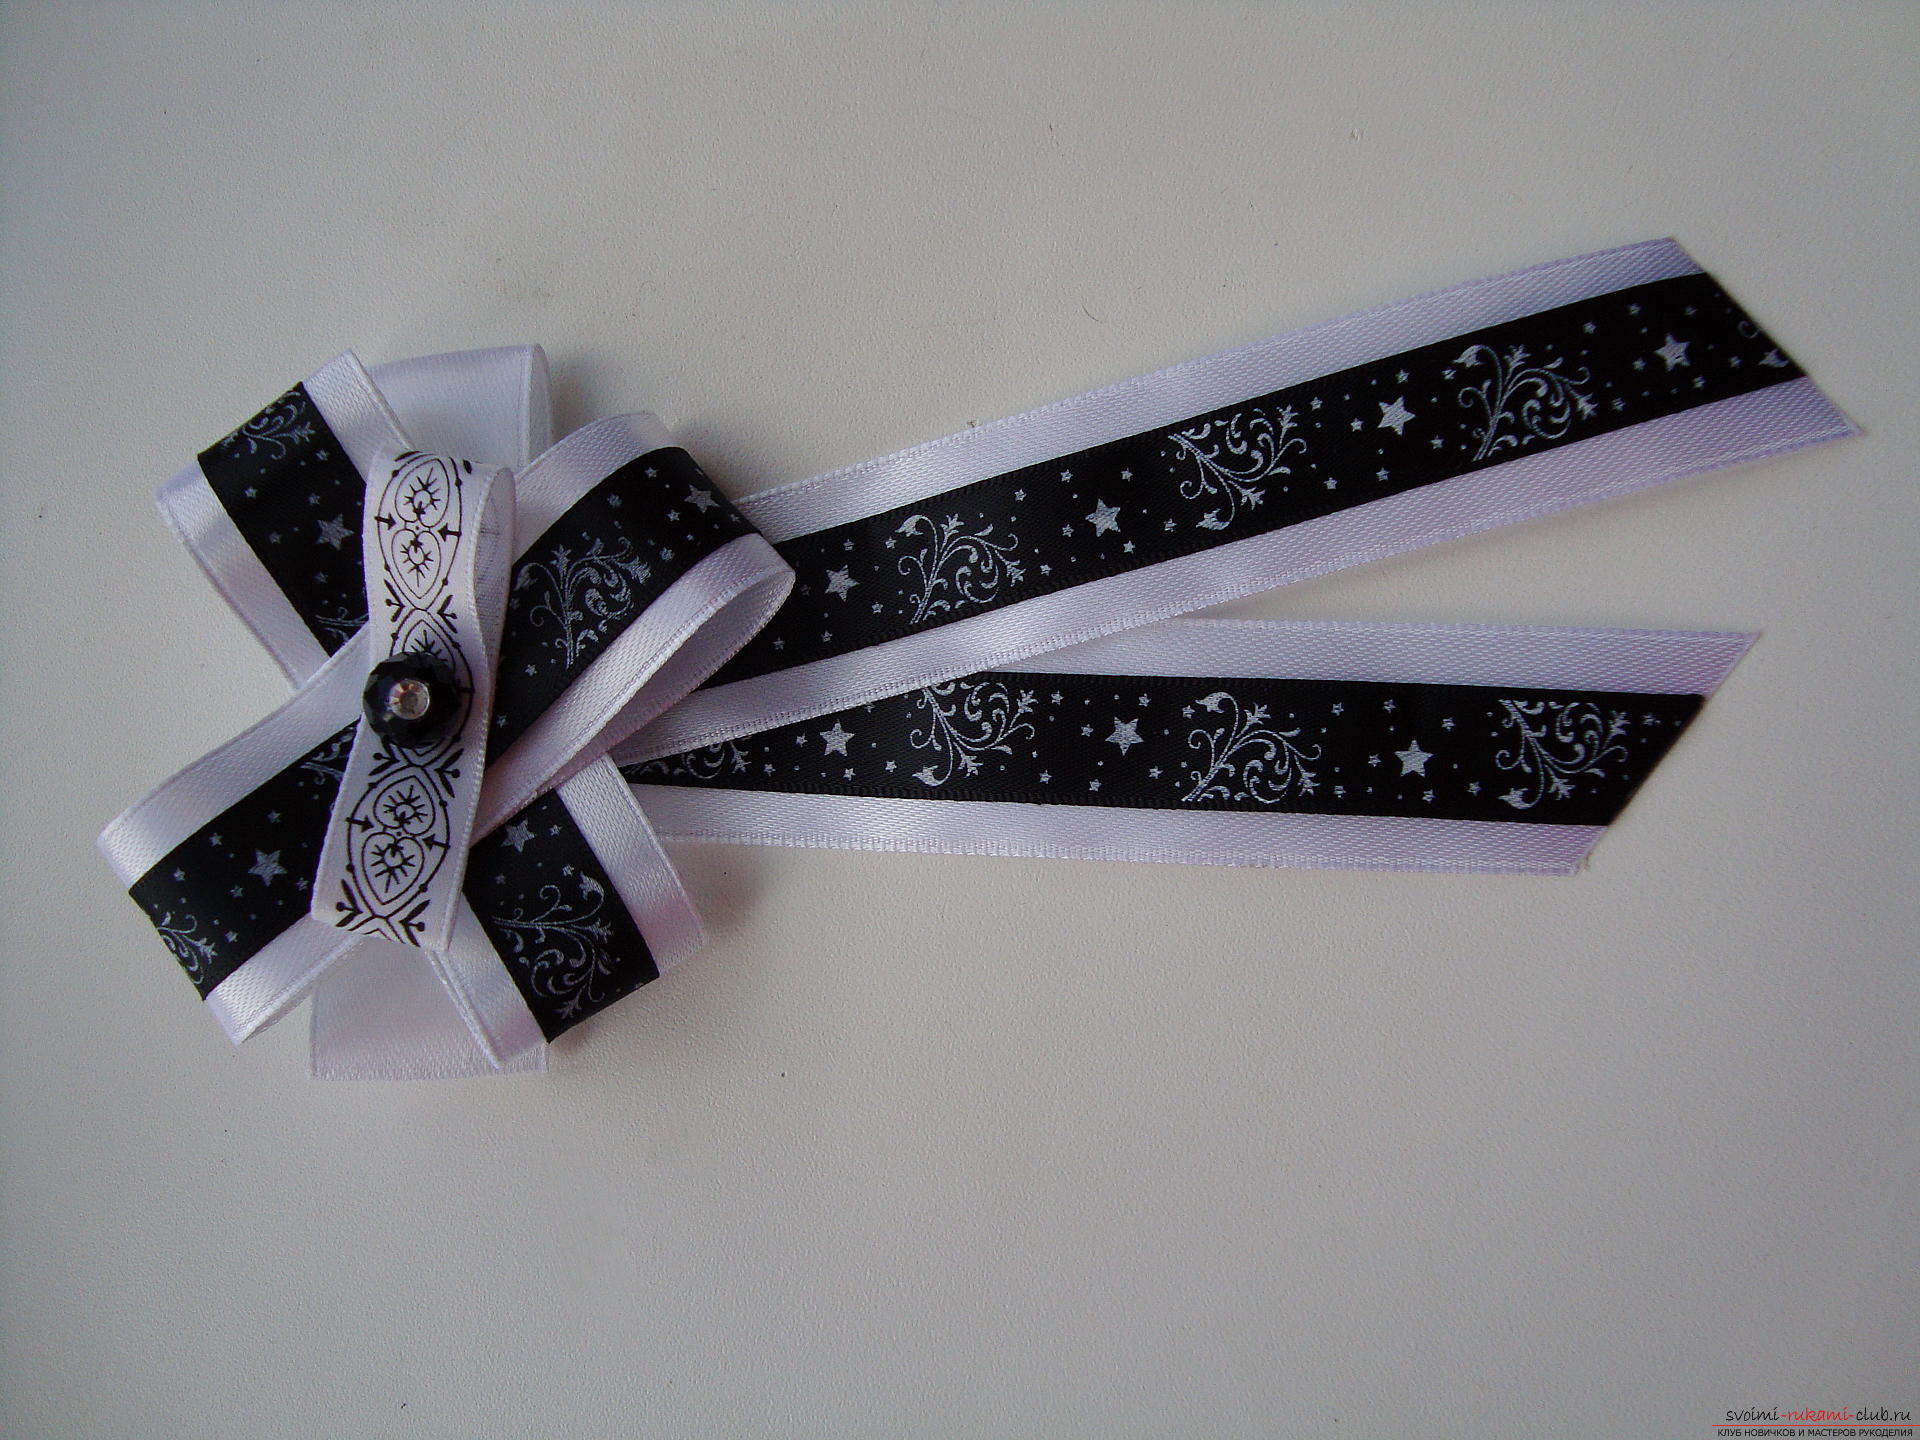 Пошаговая инструкция по созданию галстука для девочки к 1 сенября. Фото №16